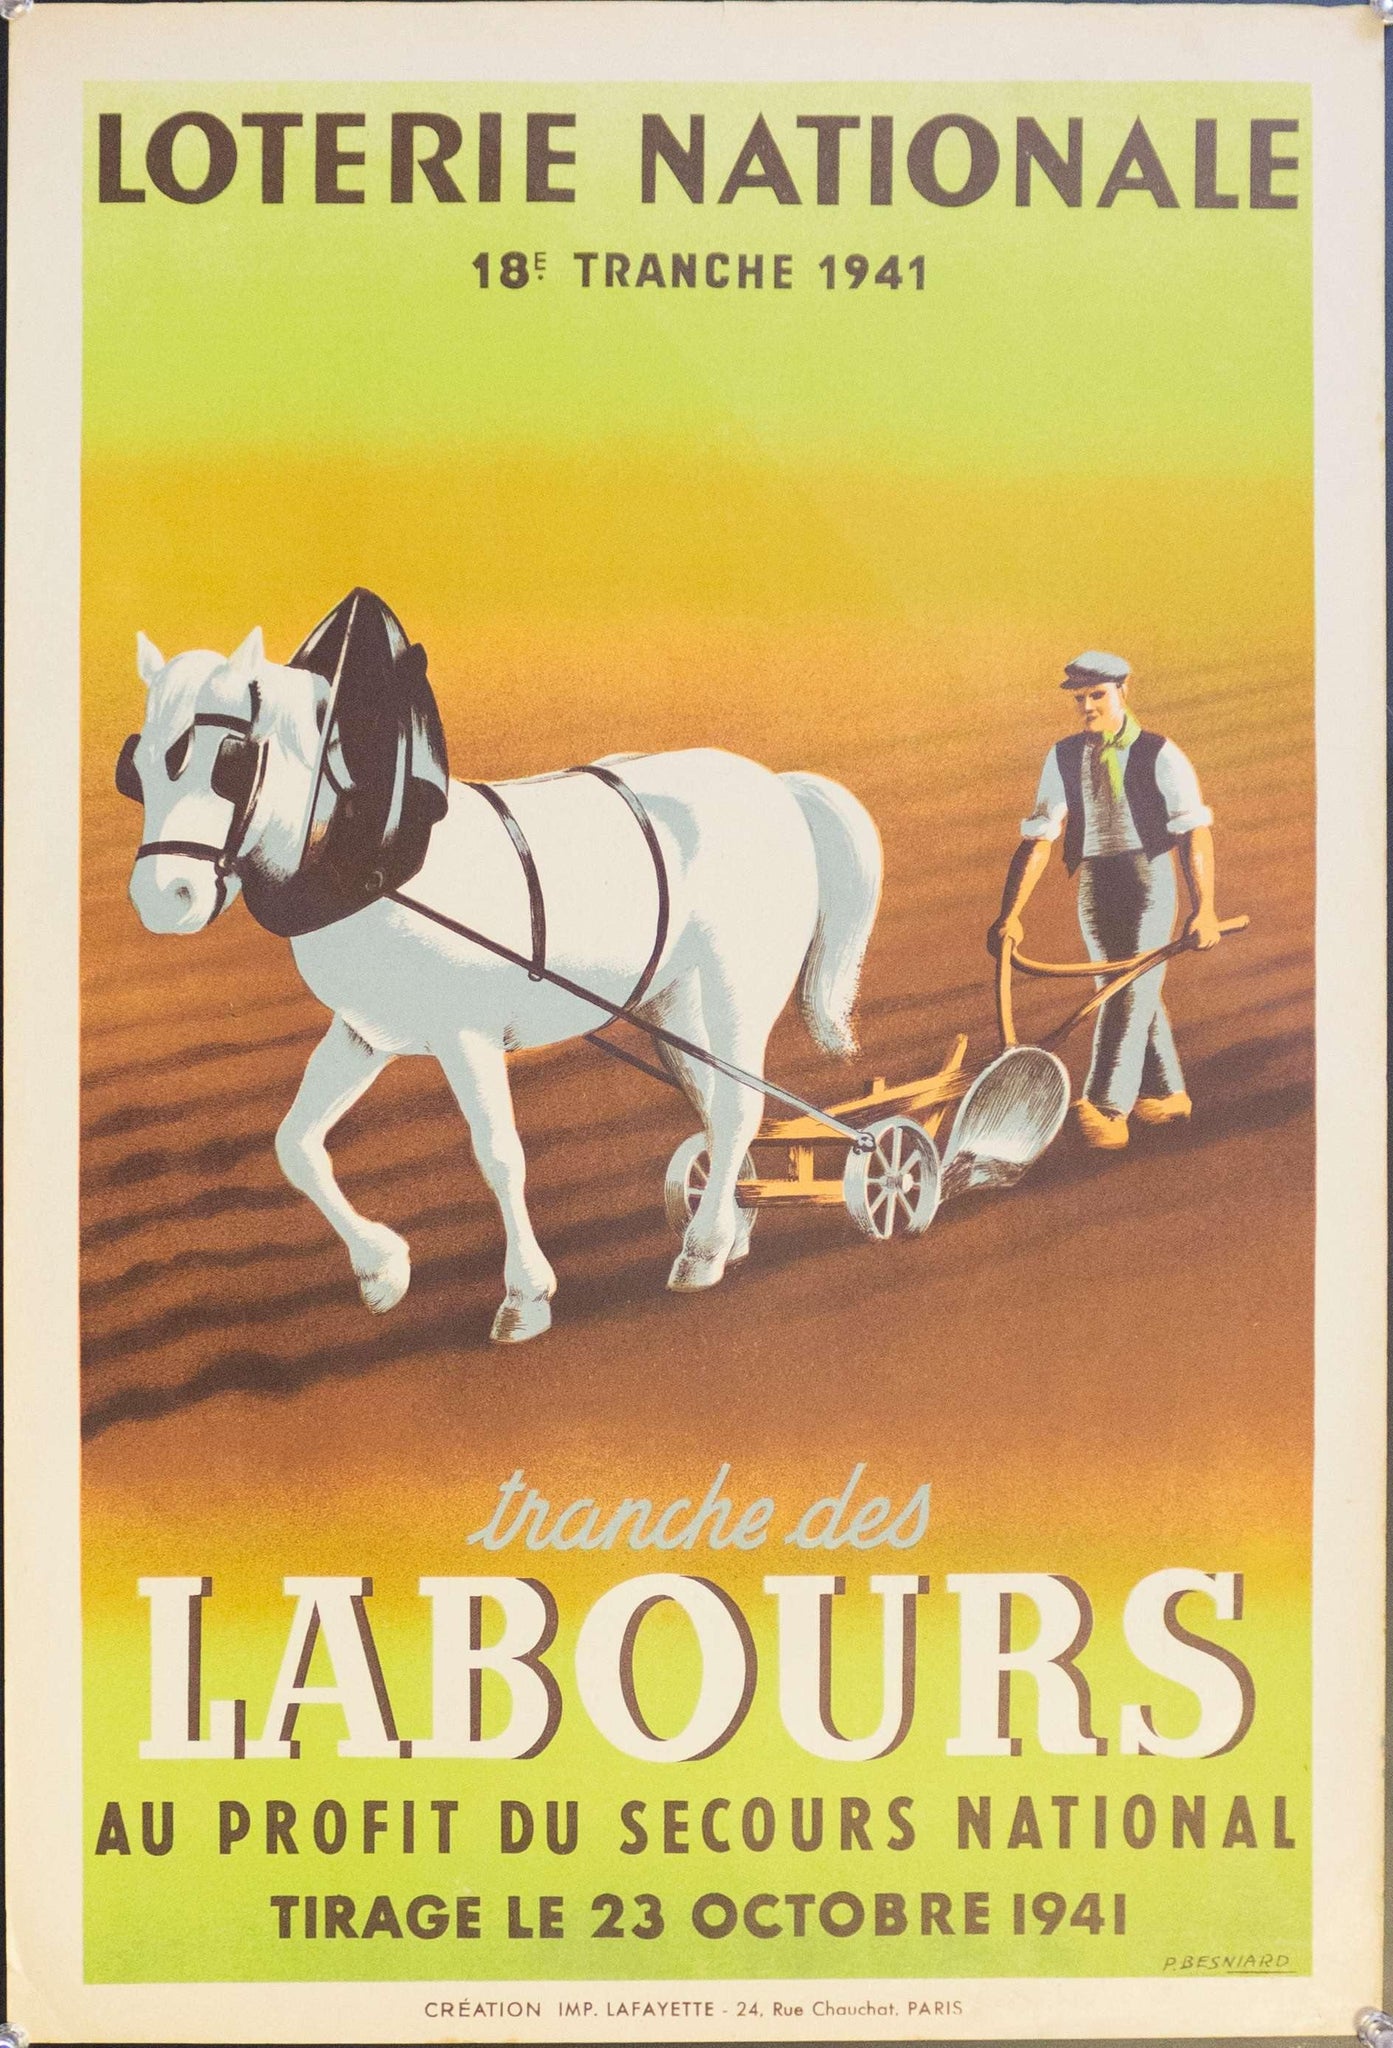 1941 Tranche Des Labours Au Profit Du Secours National | Loterie Nationale - Golden Age Posters